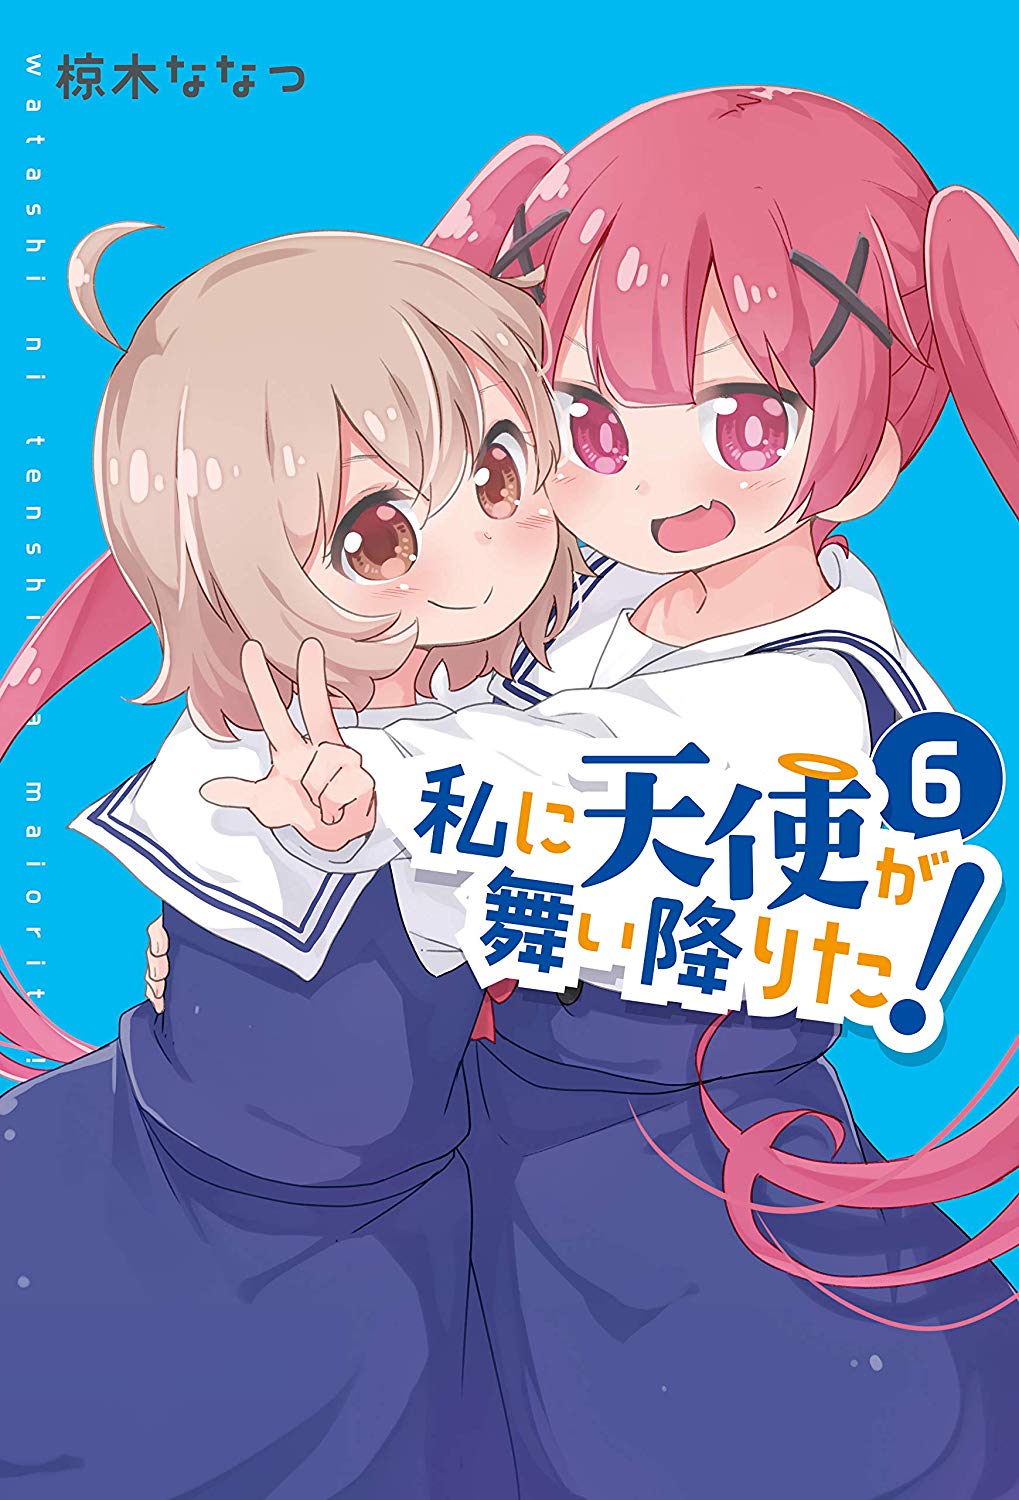 Watashi ni Tenshi ga Maiorita! (Manga), Watashi ni Tenshi ga Maiorita Wiki